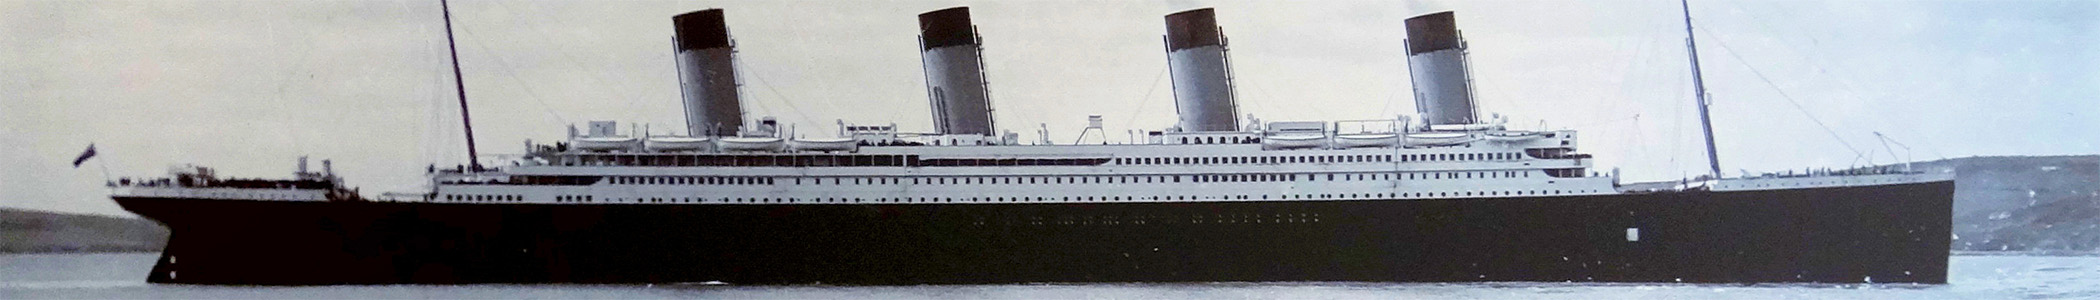 Титаник вояж. Ватерлиния Титаника. Титаник ниже ватерлинии. Саутгемптон музей Титаника. Ватерлиния Титаника в метрах.